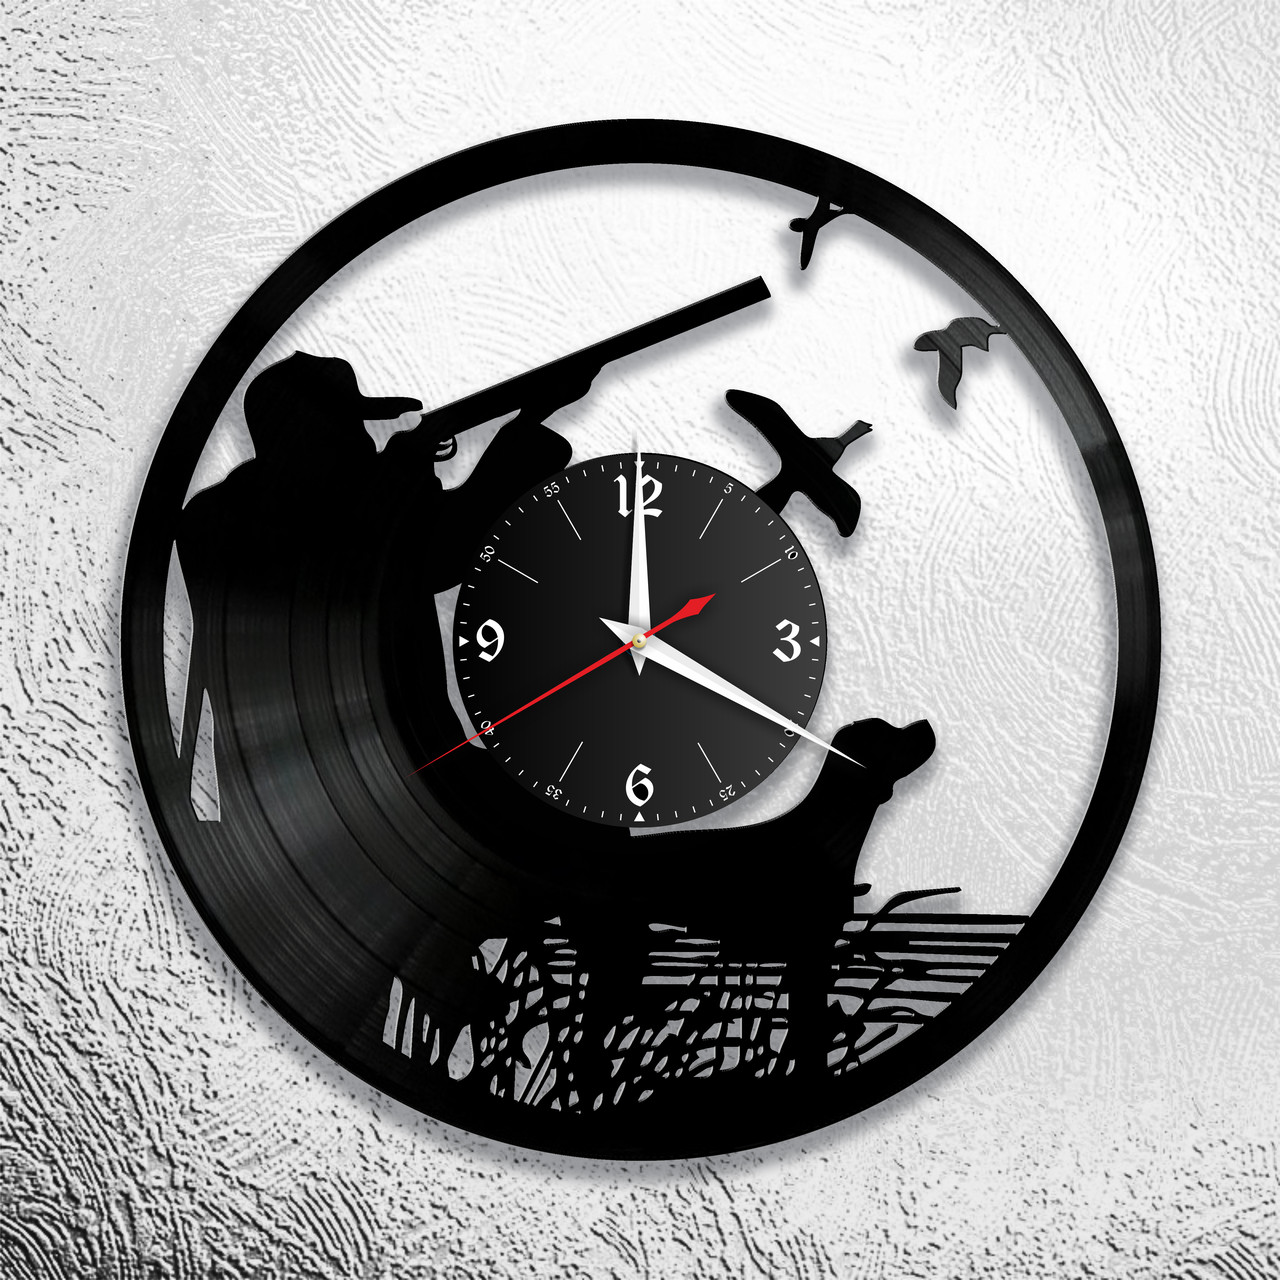 Оригинальные часы из виниловых пластинок "Охота" версия 1, фото 1